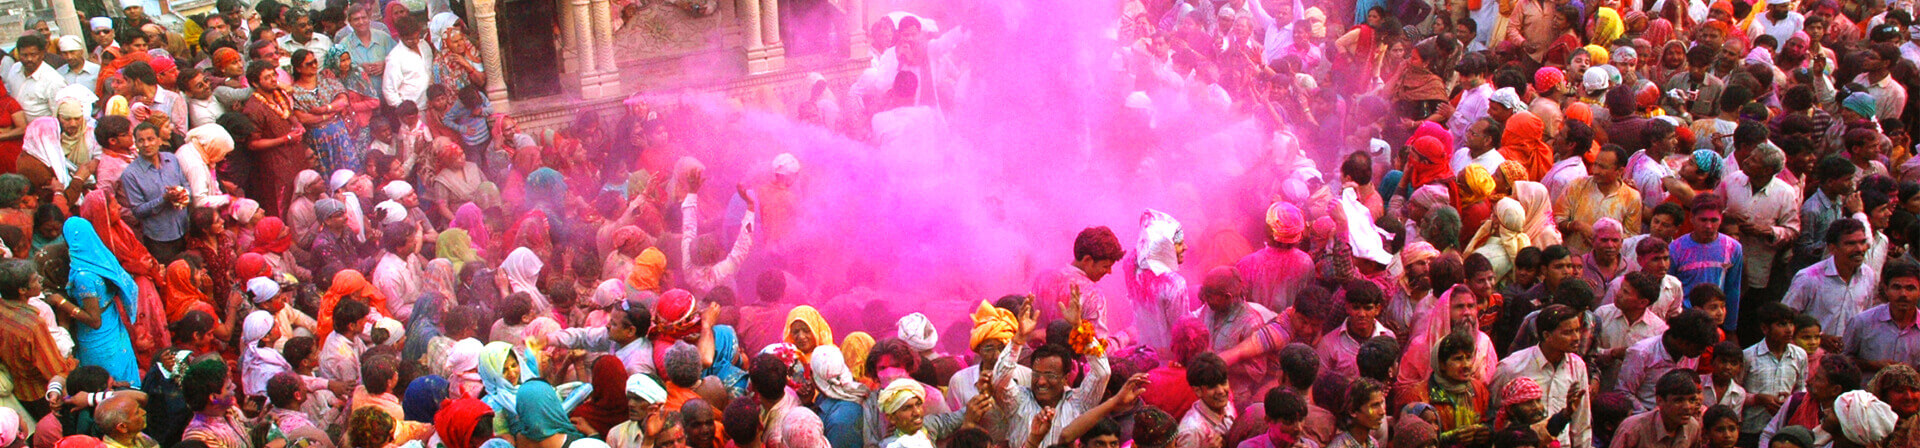 Festival Of Holi In Mathura